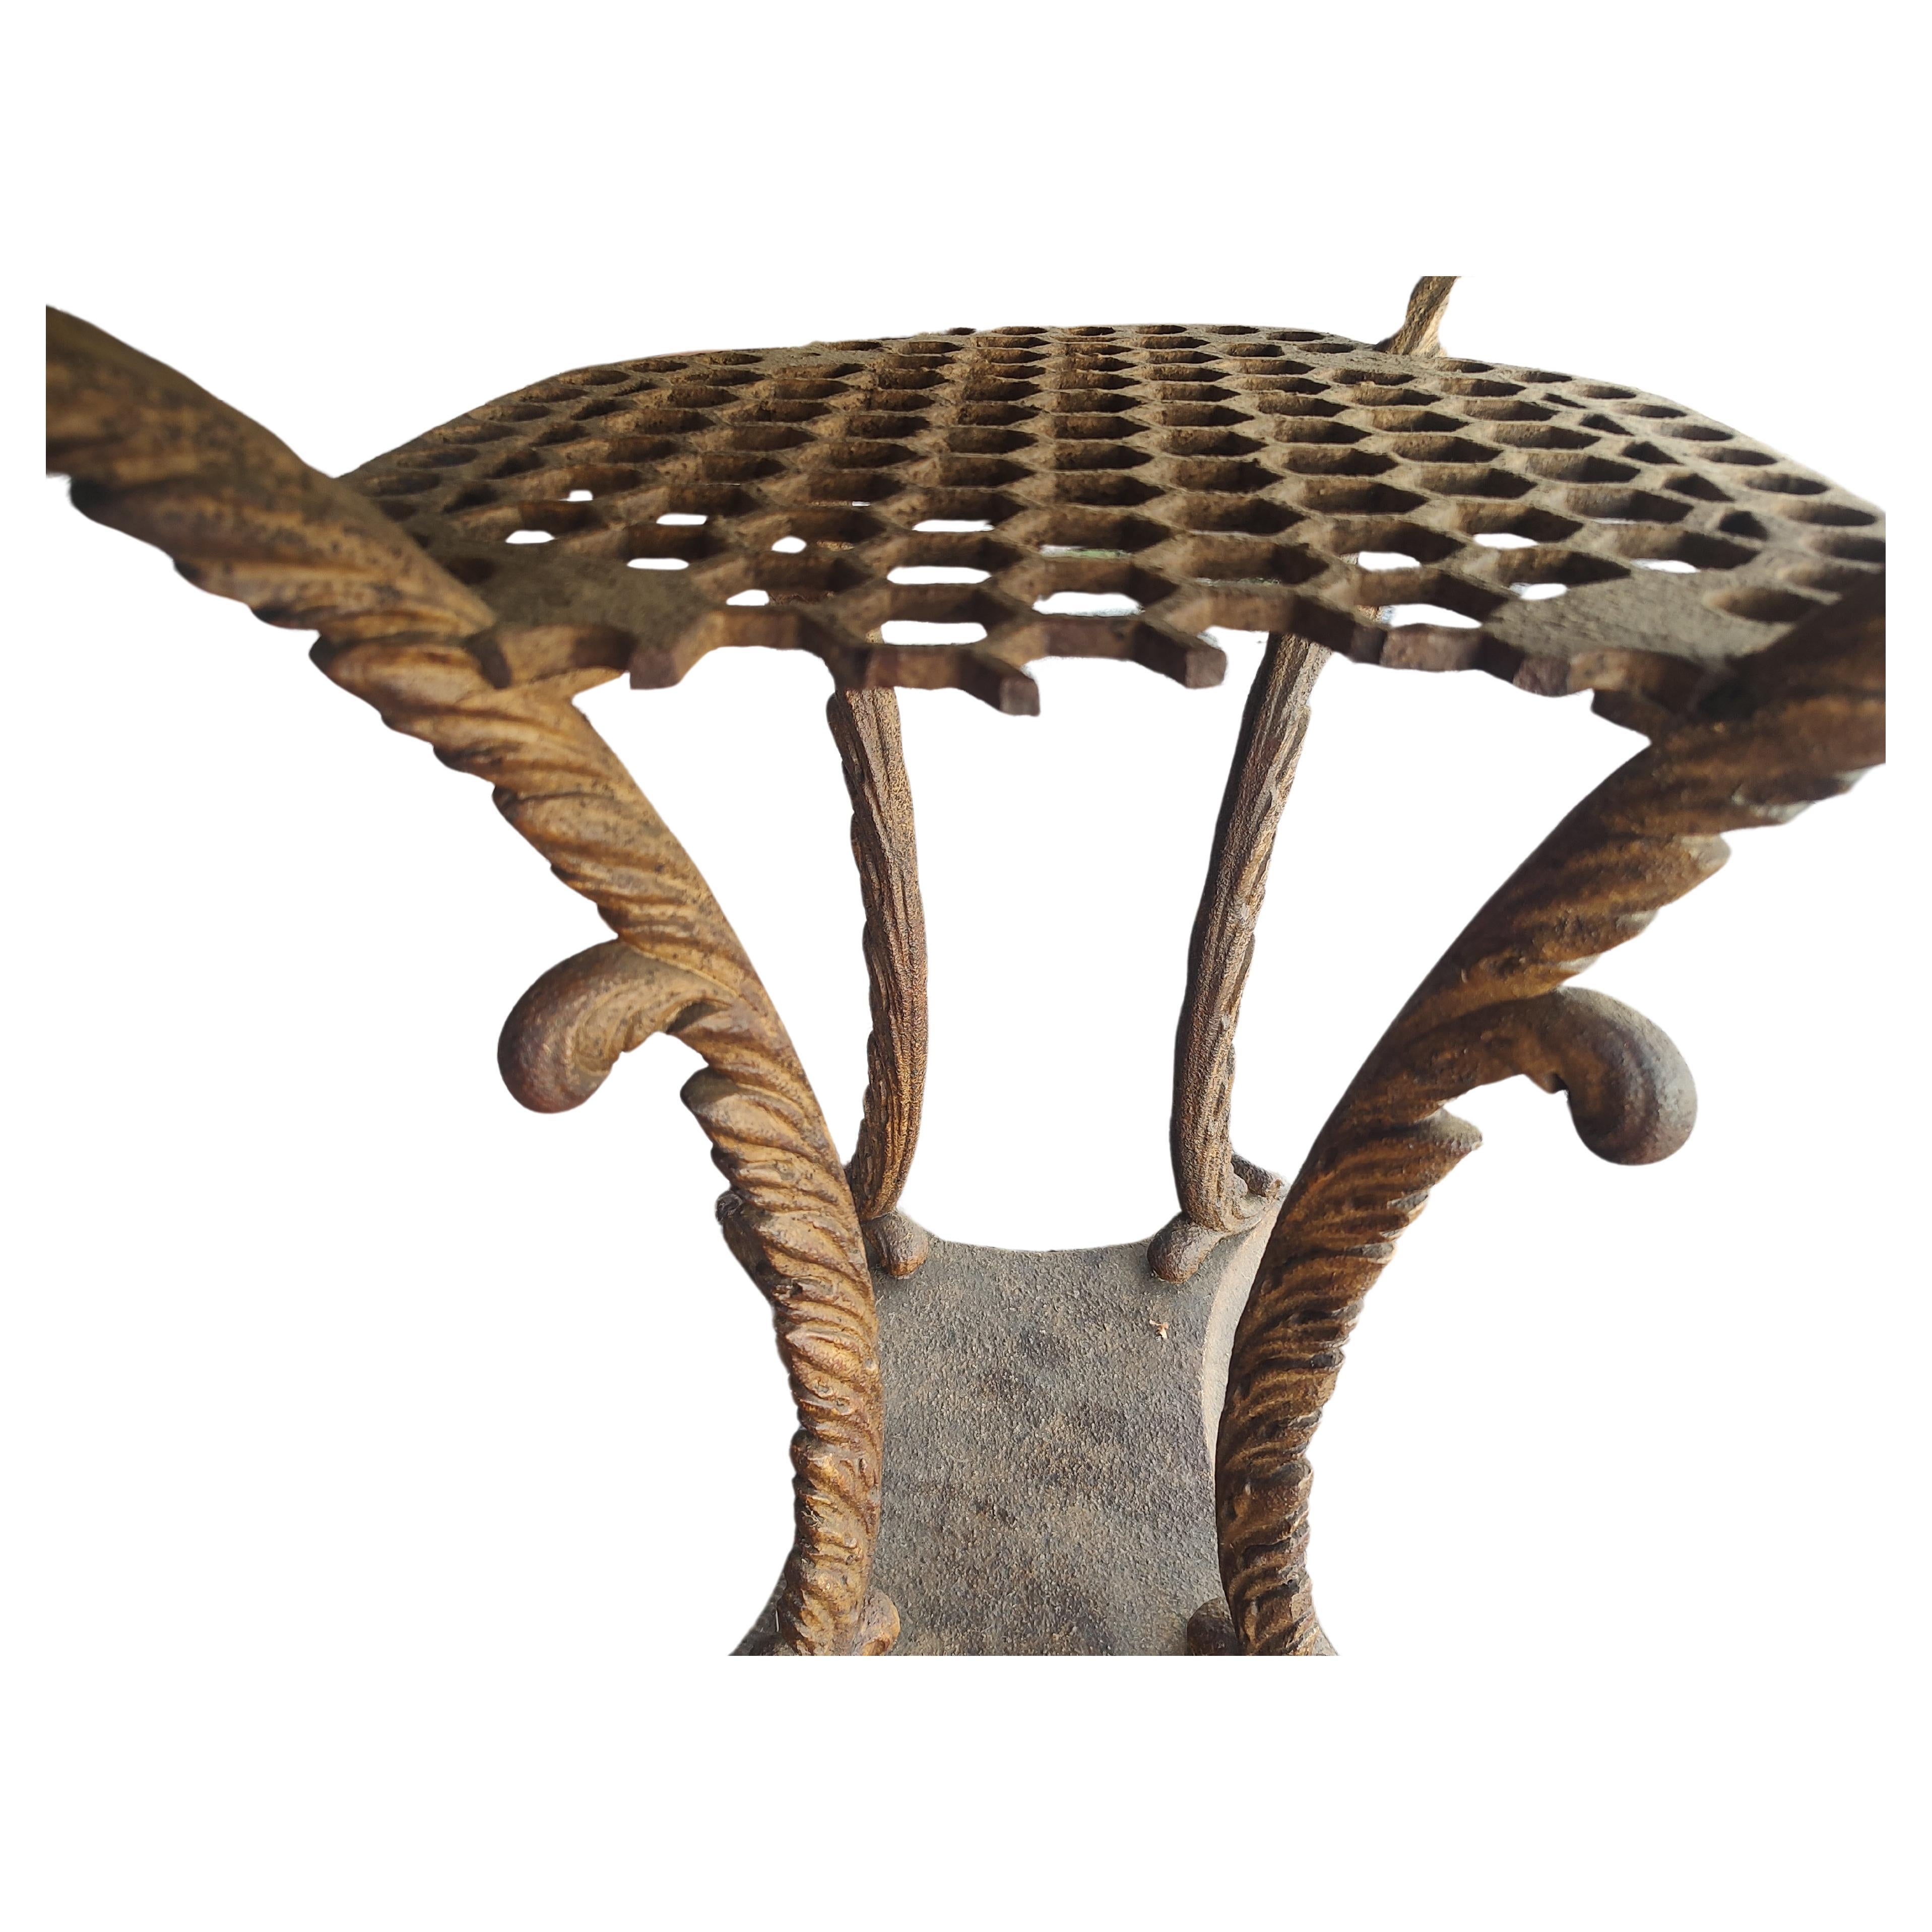 Erstaunliches Stück Geschichte des 19. Jahrhunderts in diesem gusseisernen Tisch aus Frankreich. Verschnörkelte, organische, ausgestellte Beine, die florale Faunen darstellen. Das untere Regal ist durchbohrt und wurde im Laufe seines Lebens